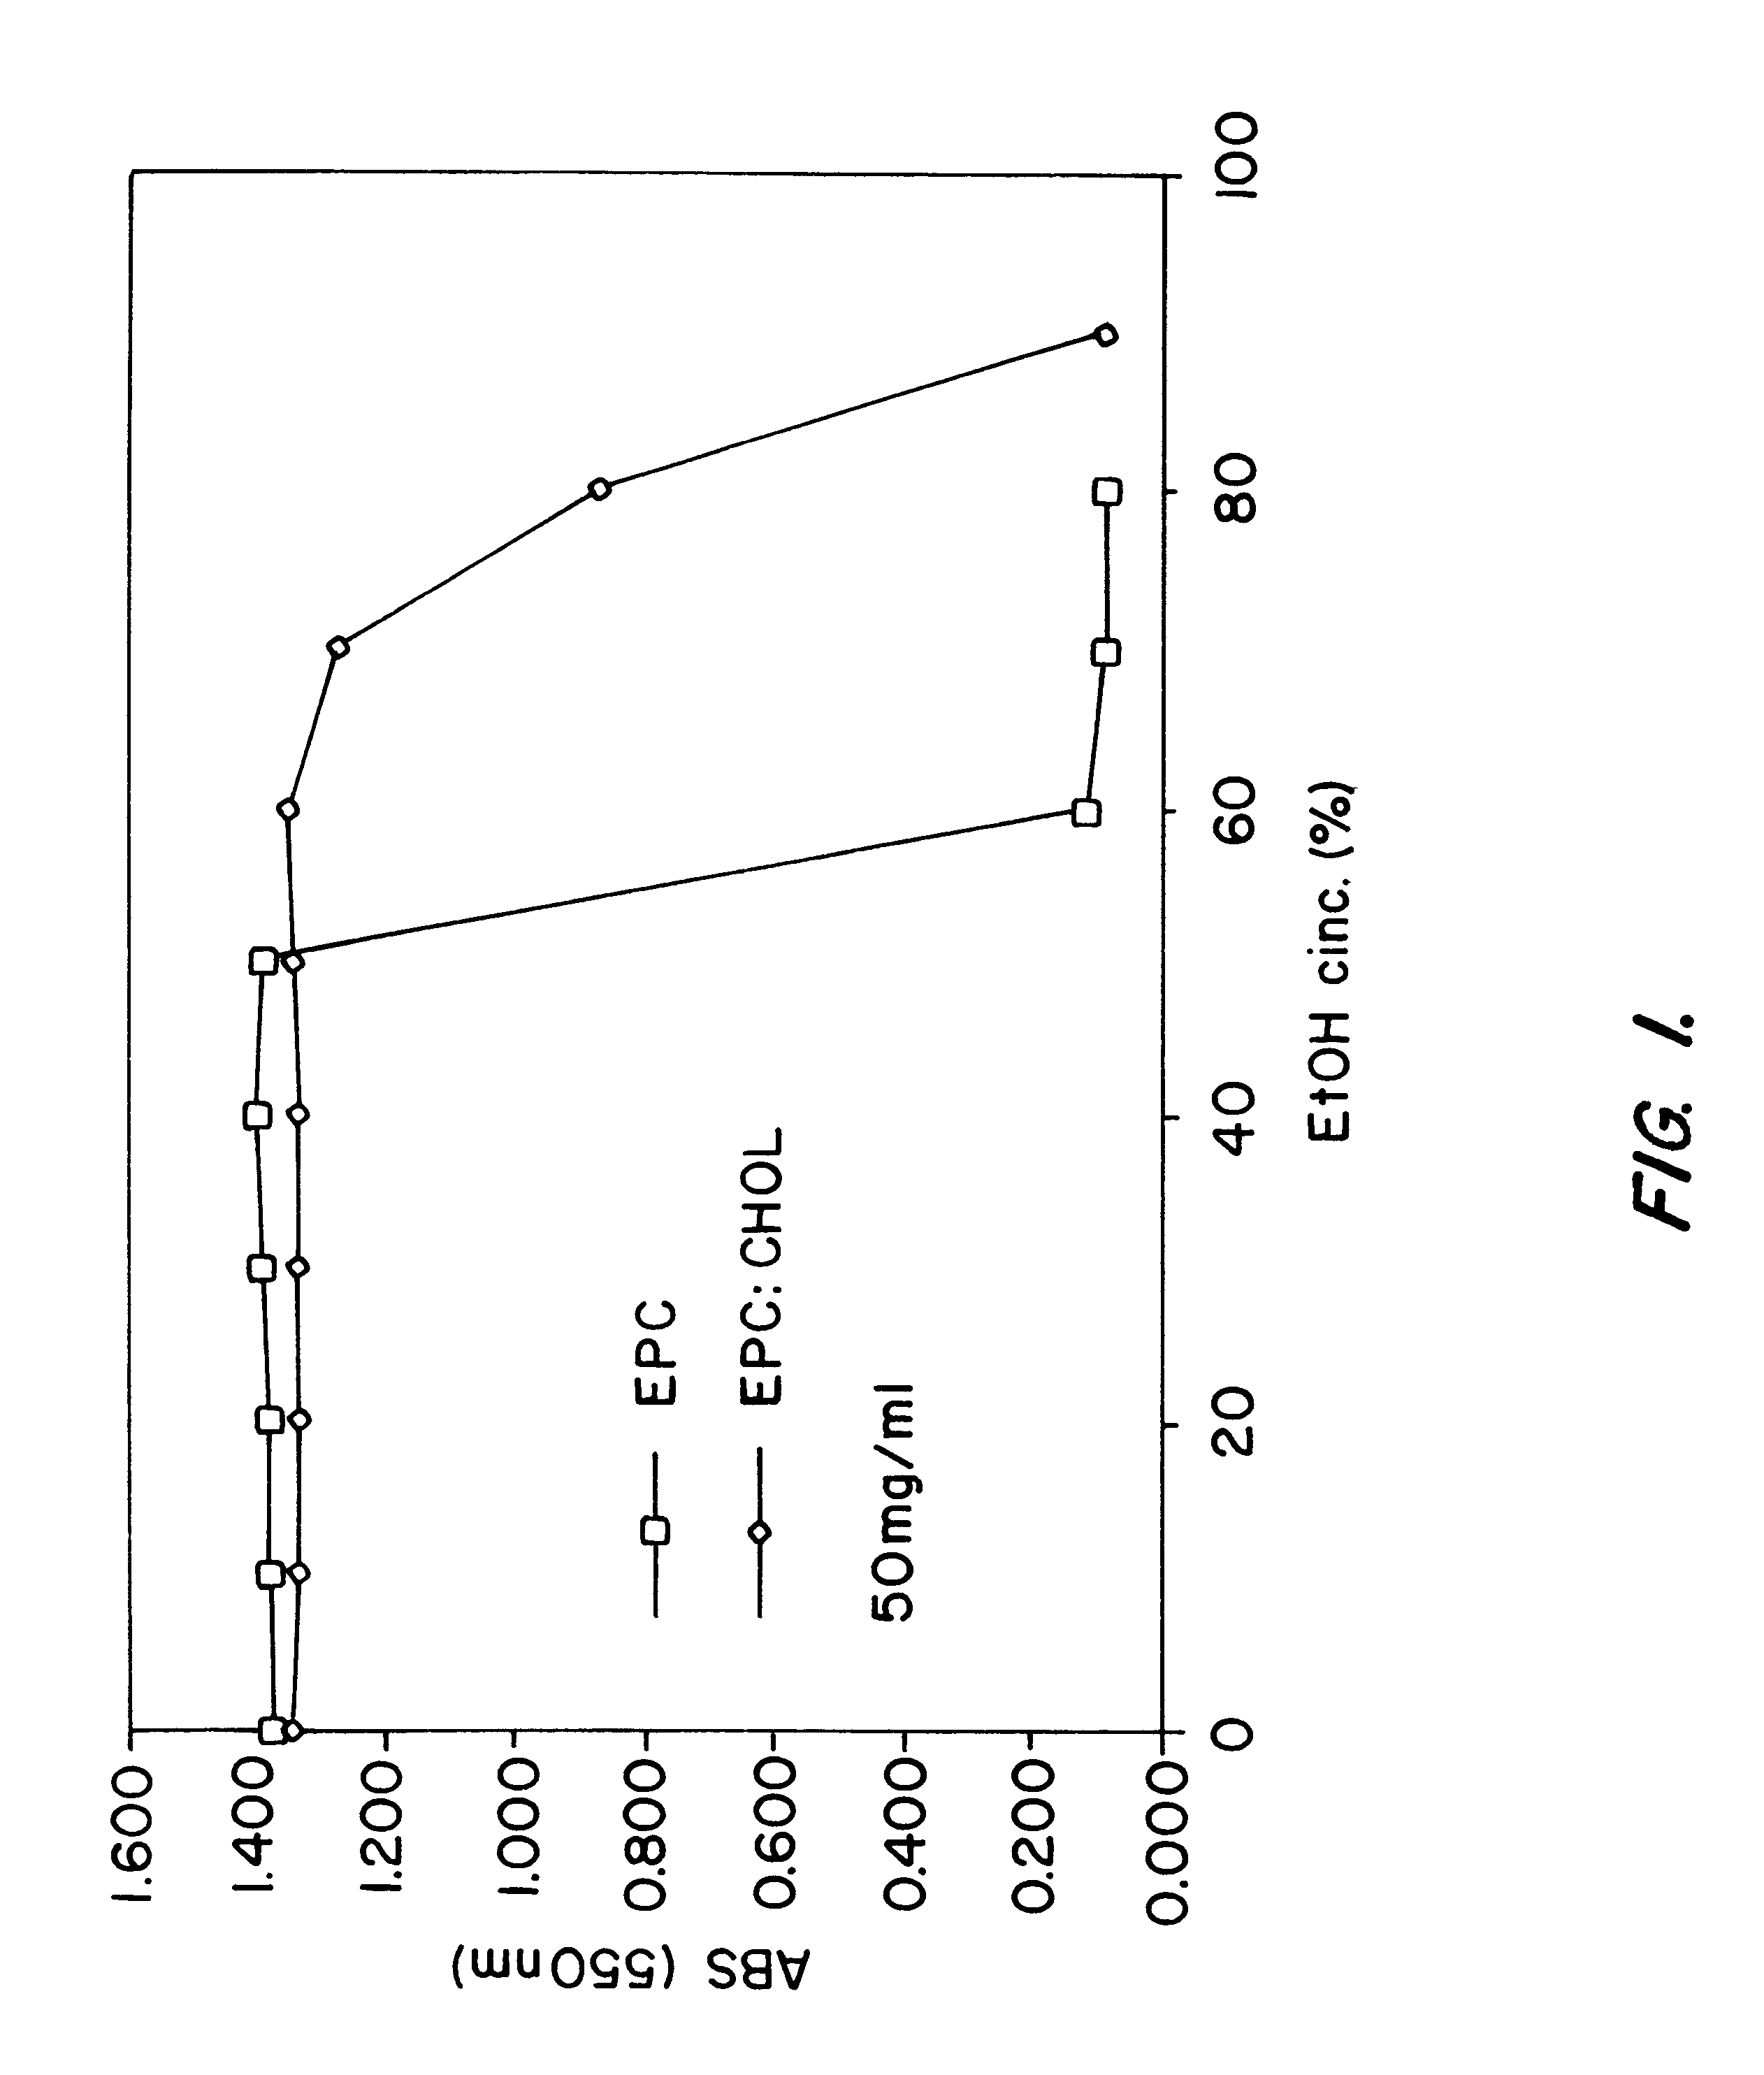 Method of loading preformed liposomes using ethanol